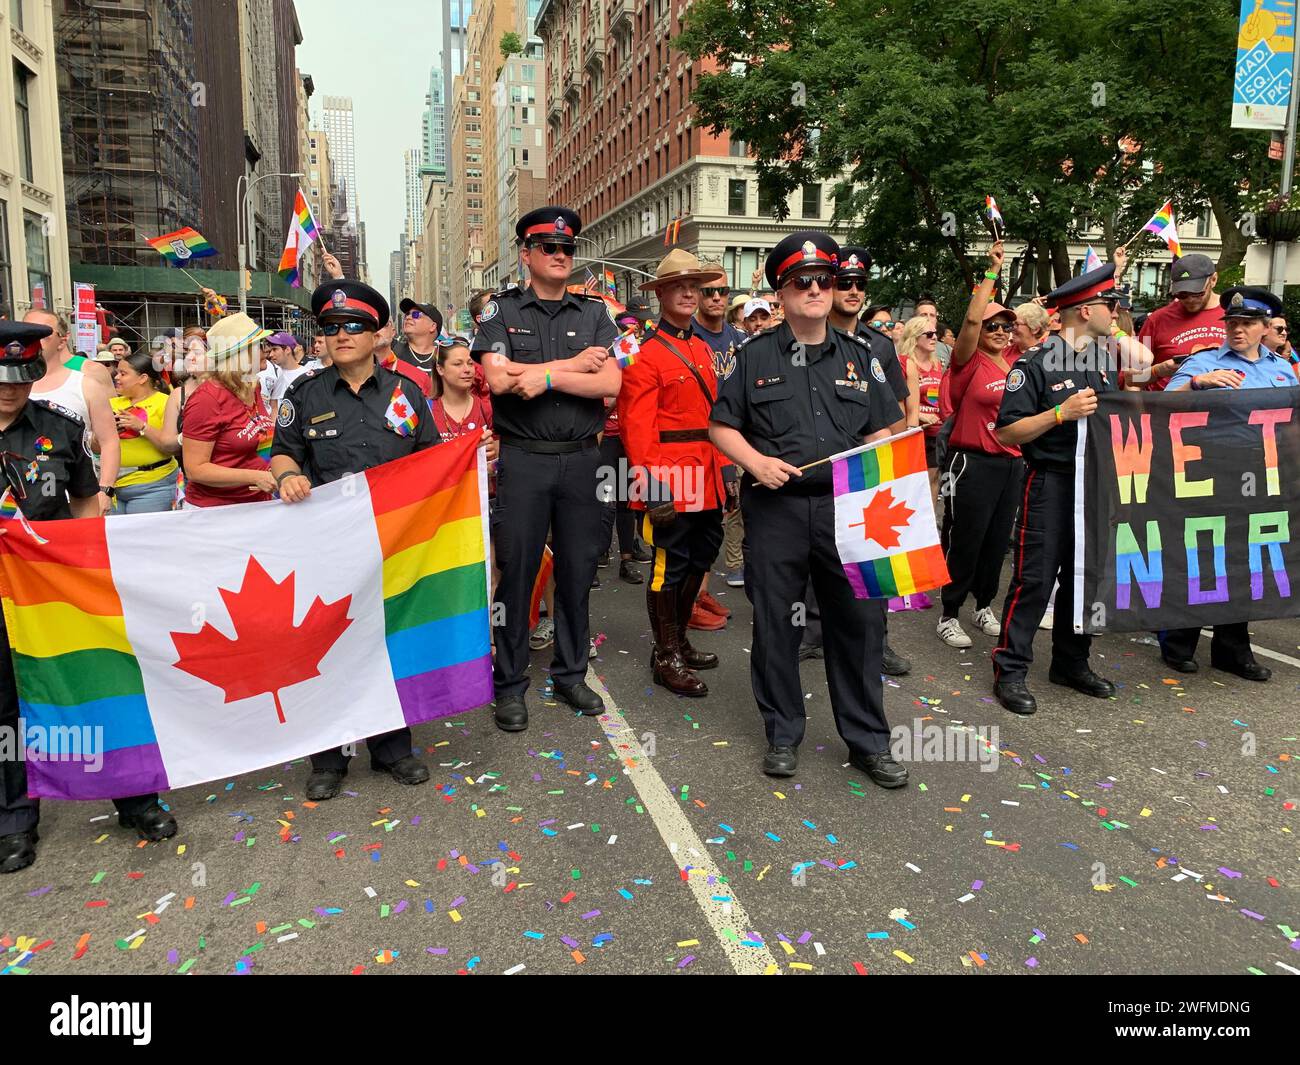 Une délégation de la Gendarmerie royale du Canada marche dans le défilé de la fierté gaie à New York pour célébrer la communauté LBGT Banque D'Images